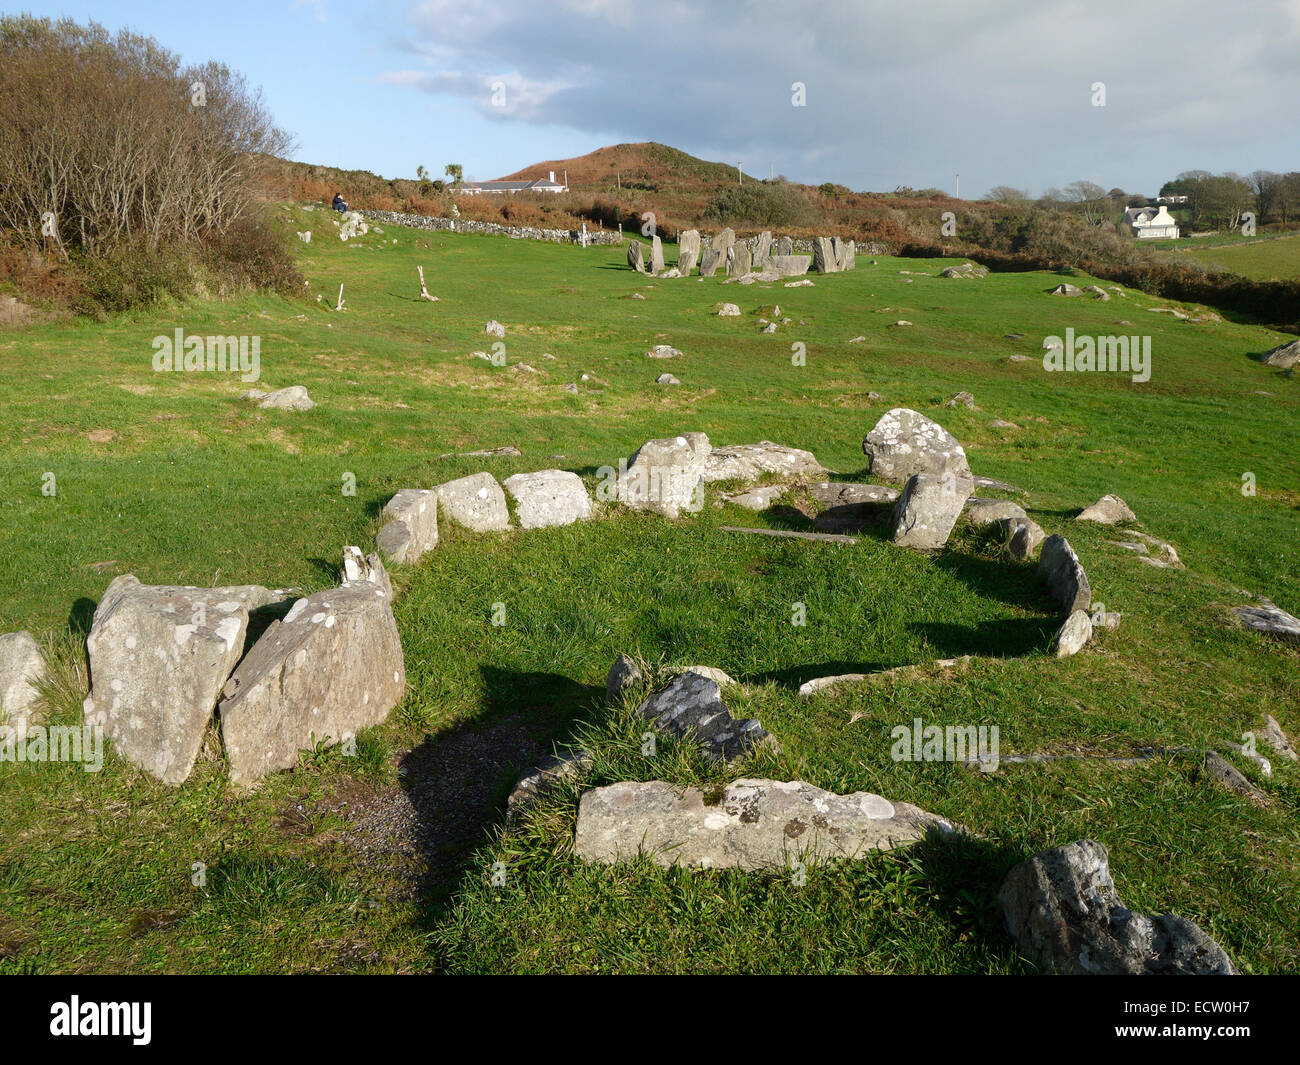 Cercle de pierres de Drombeg, aussi connu sous le nom de "l'autel du druide', et les restes d'une cabane en pierre, près de Glandore, comté de Cork, Irlande Banque D'Images